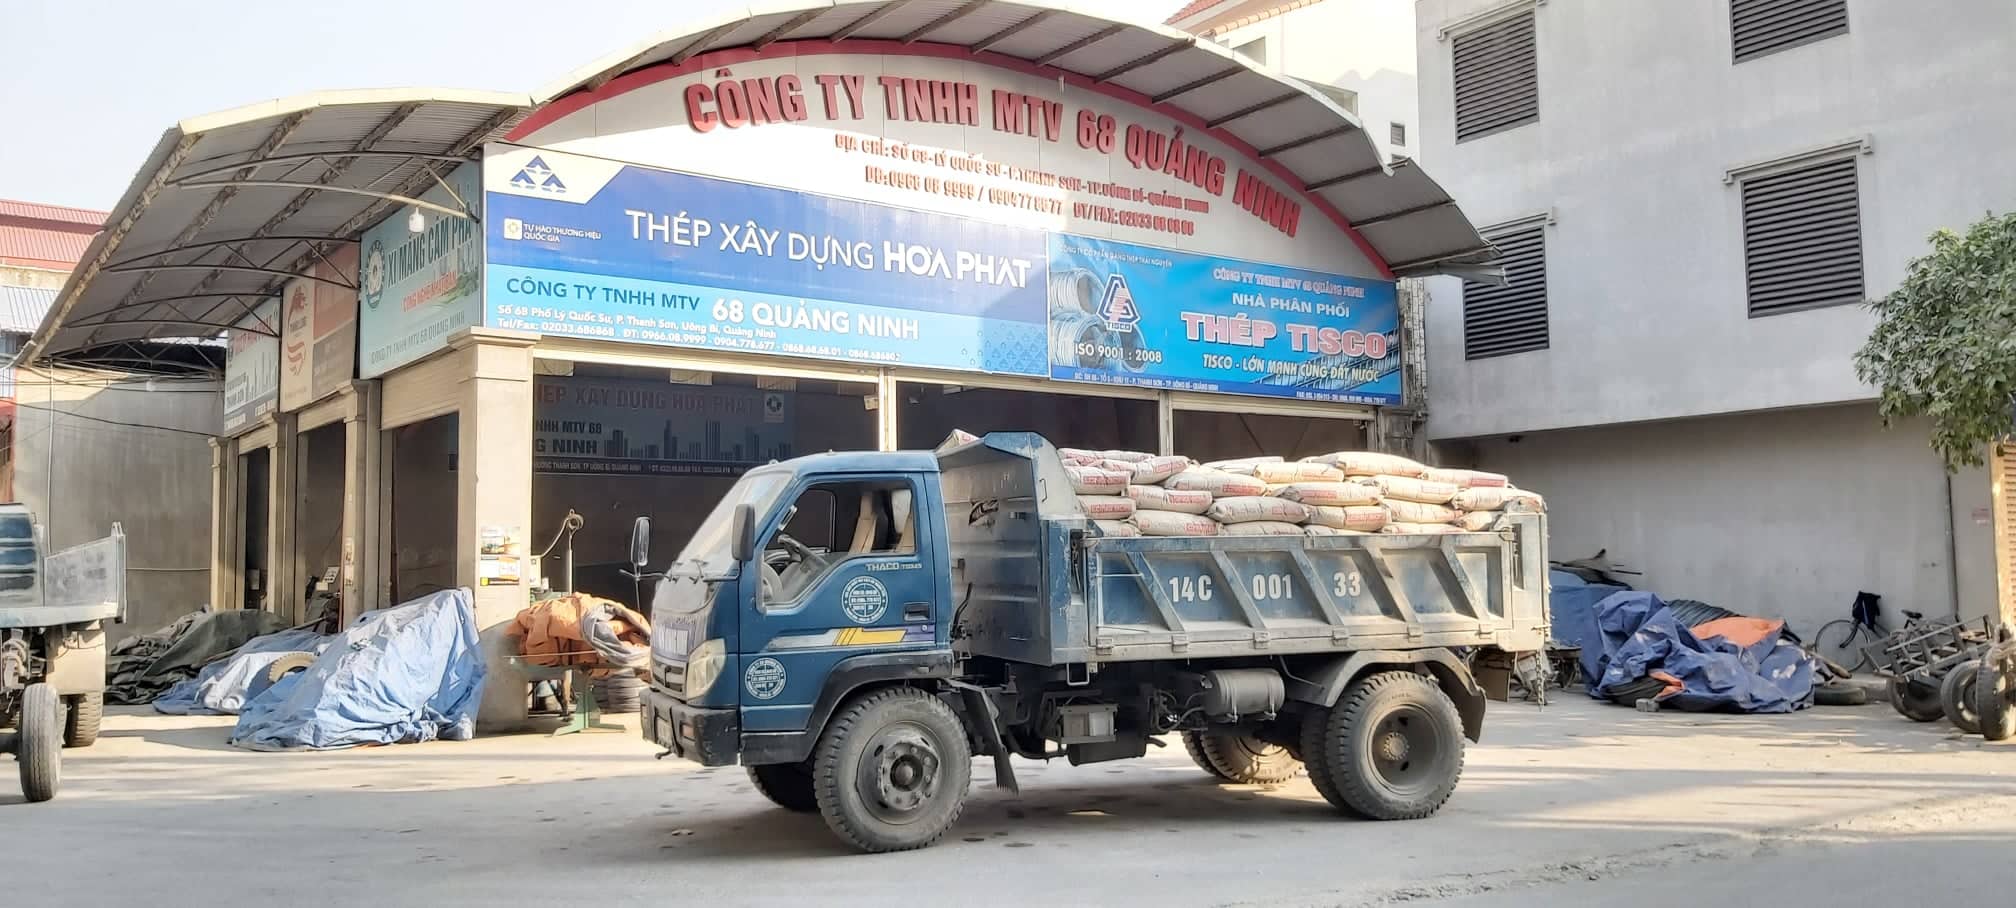 Những chiếc xe tải của Công ty TNHH MTV 68 Quảng Ninh thường xuyên ra vào lấy xi măng từ bãi tập kết trong khu dân cư.